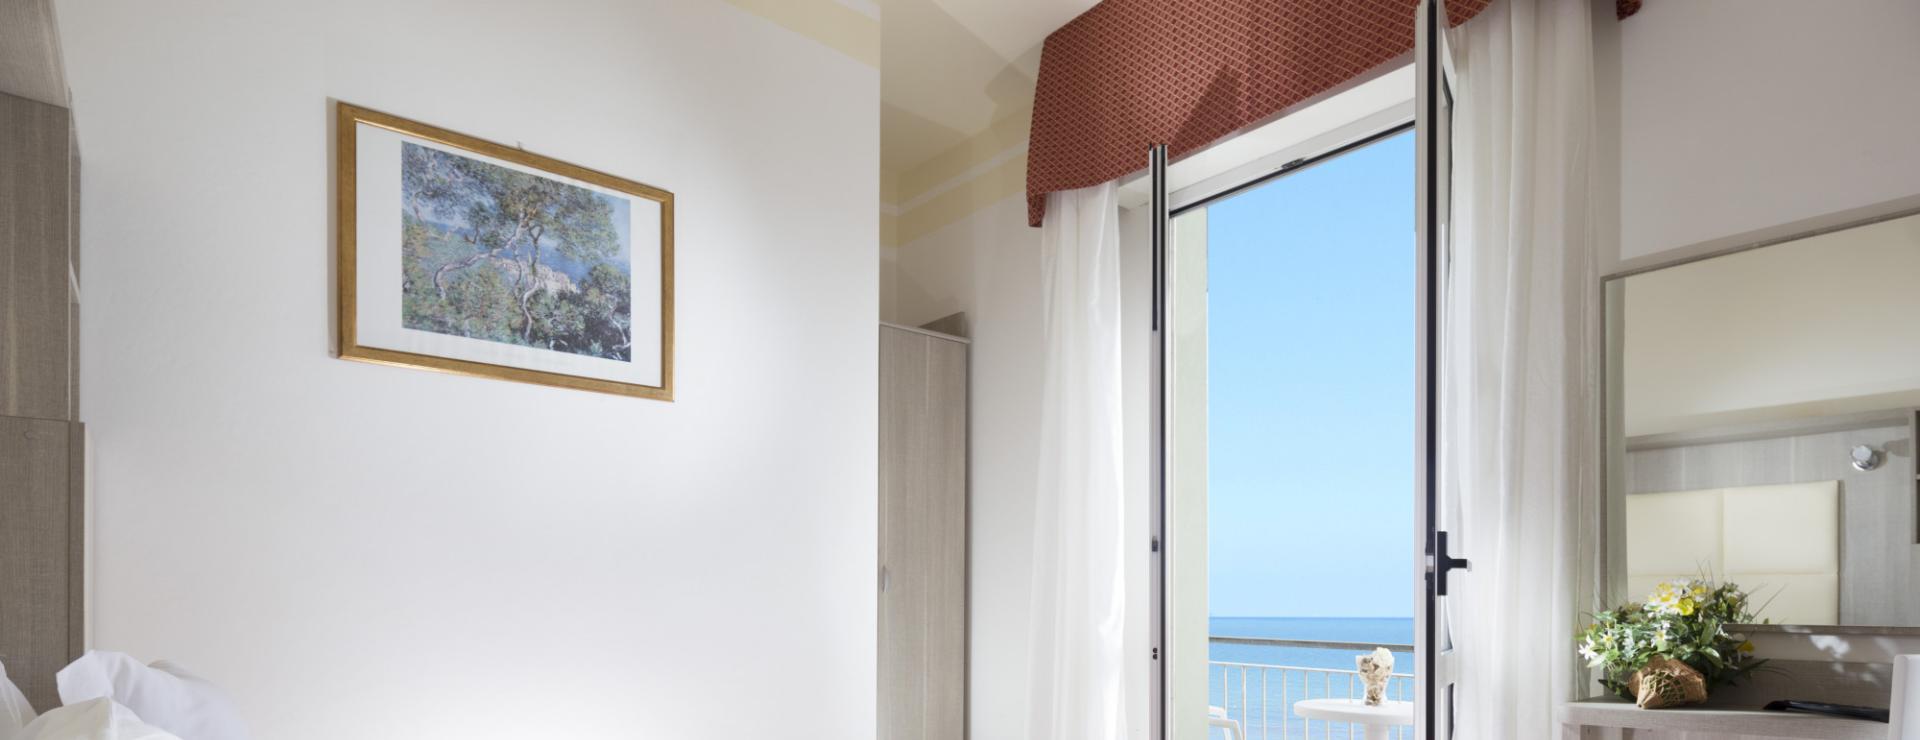 Offerta Luglio Hotel sul mare a Rimini